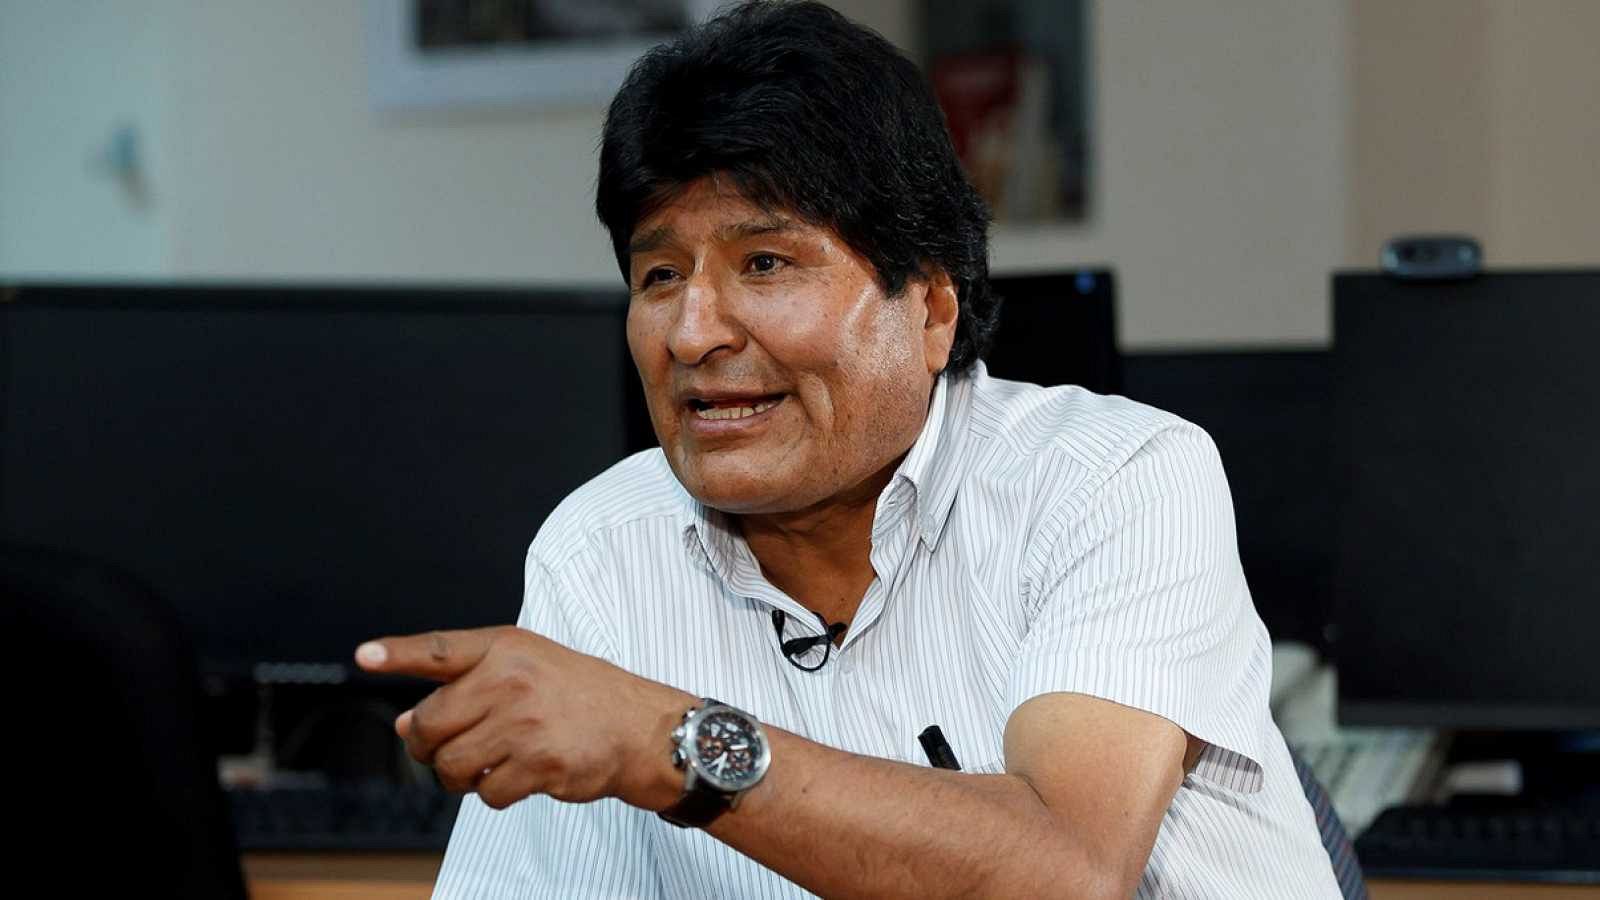 Las mañanas de RNE con Íñigo Alfonso - Evo Morales: "No me perdonan que un indio sea presidente. Es una lucha de clases" - Escuchar ahora